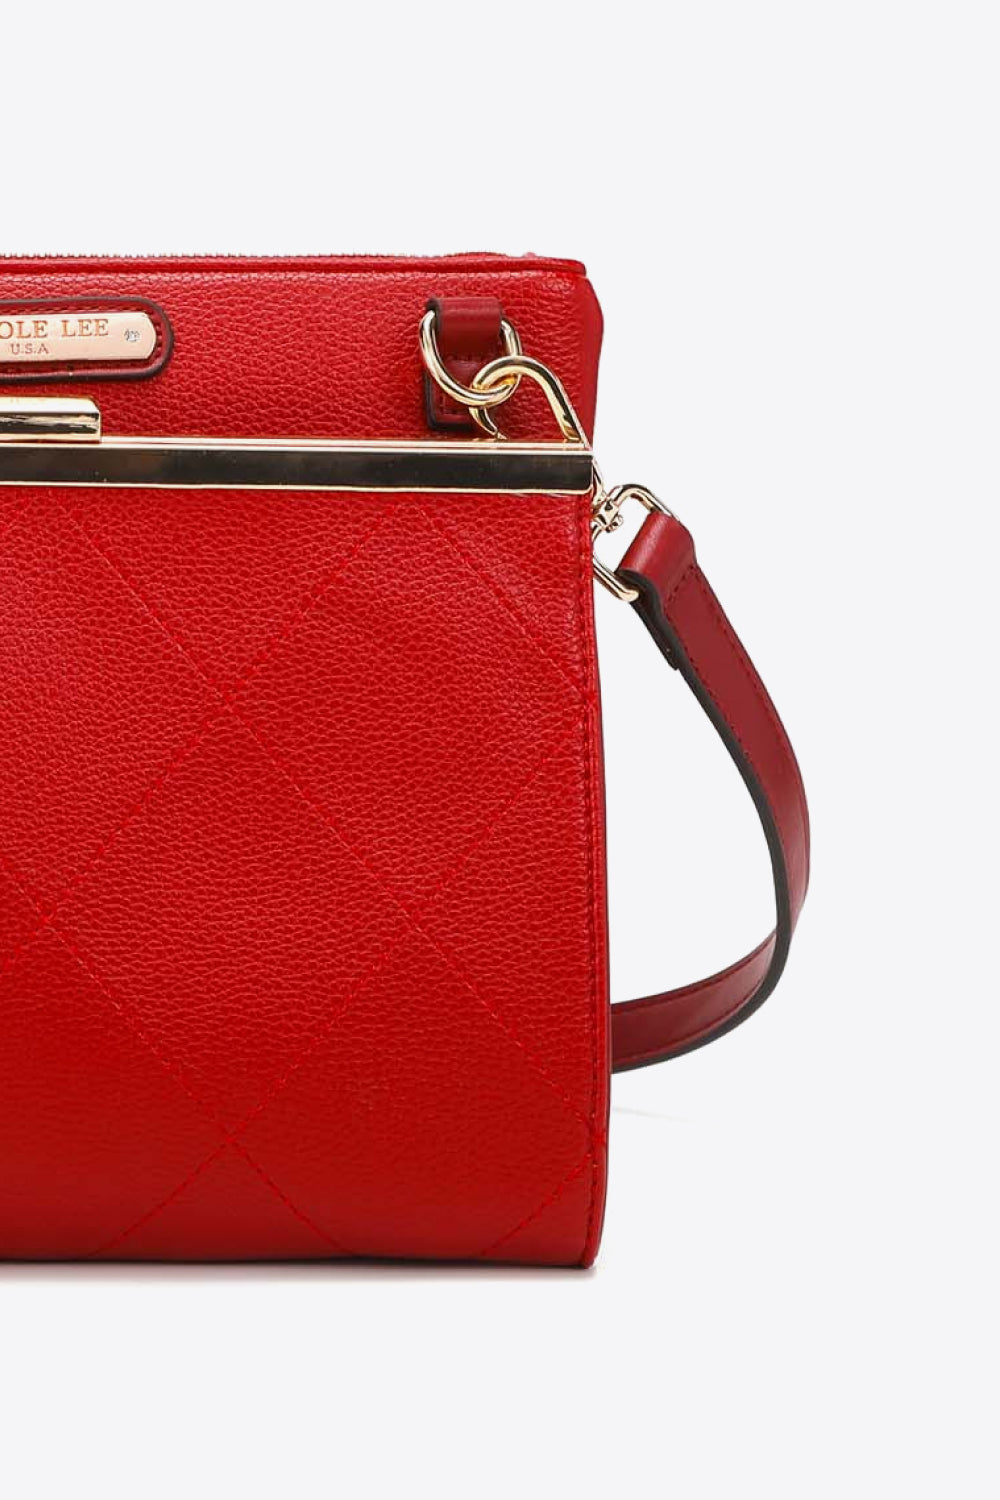 Nicole Lee USA All Day, Everyday Handbag - Tigbul's Fashion